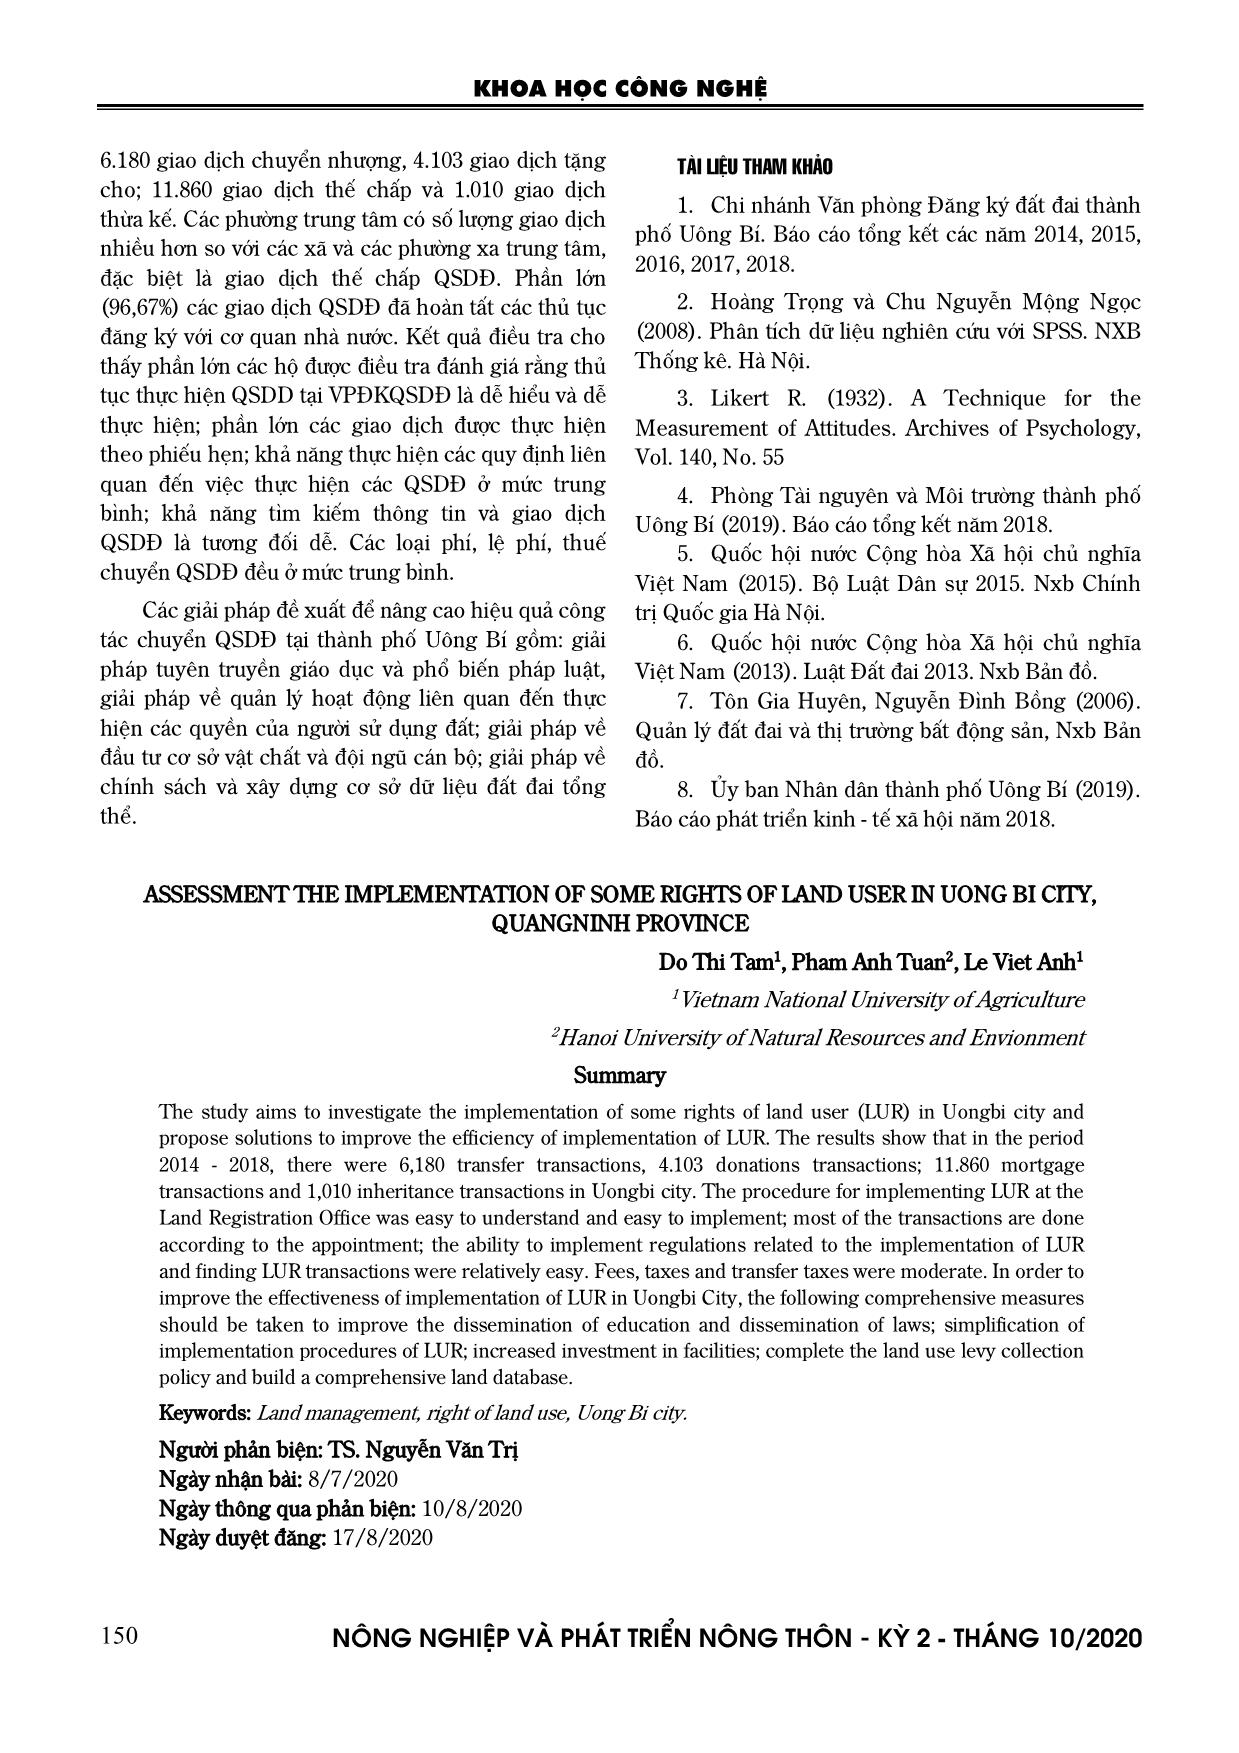 Đánh giá việc thực hiện một số quyền của người sử dụng đất tại thành phố Uông Bí, tỉnh Quảng Ninh trang 10